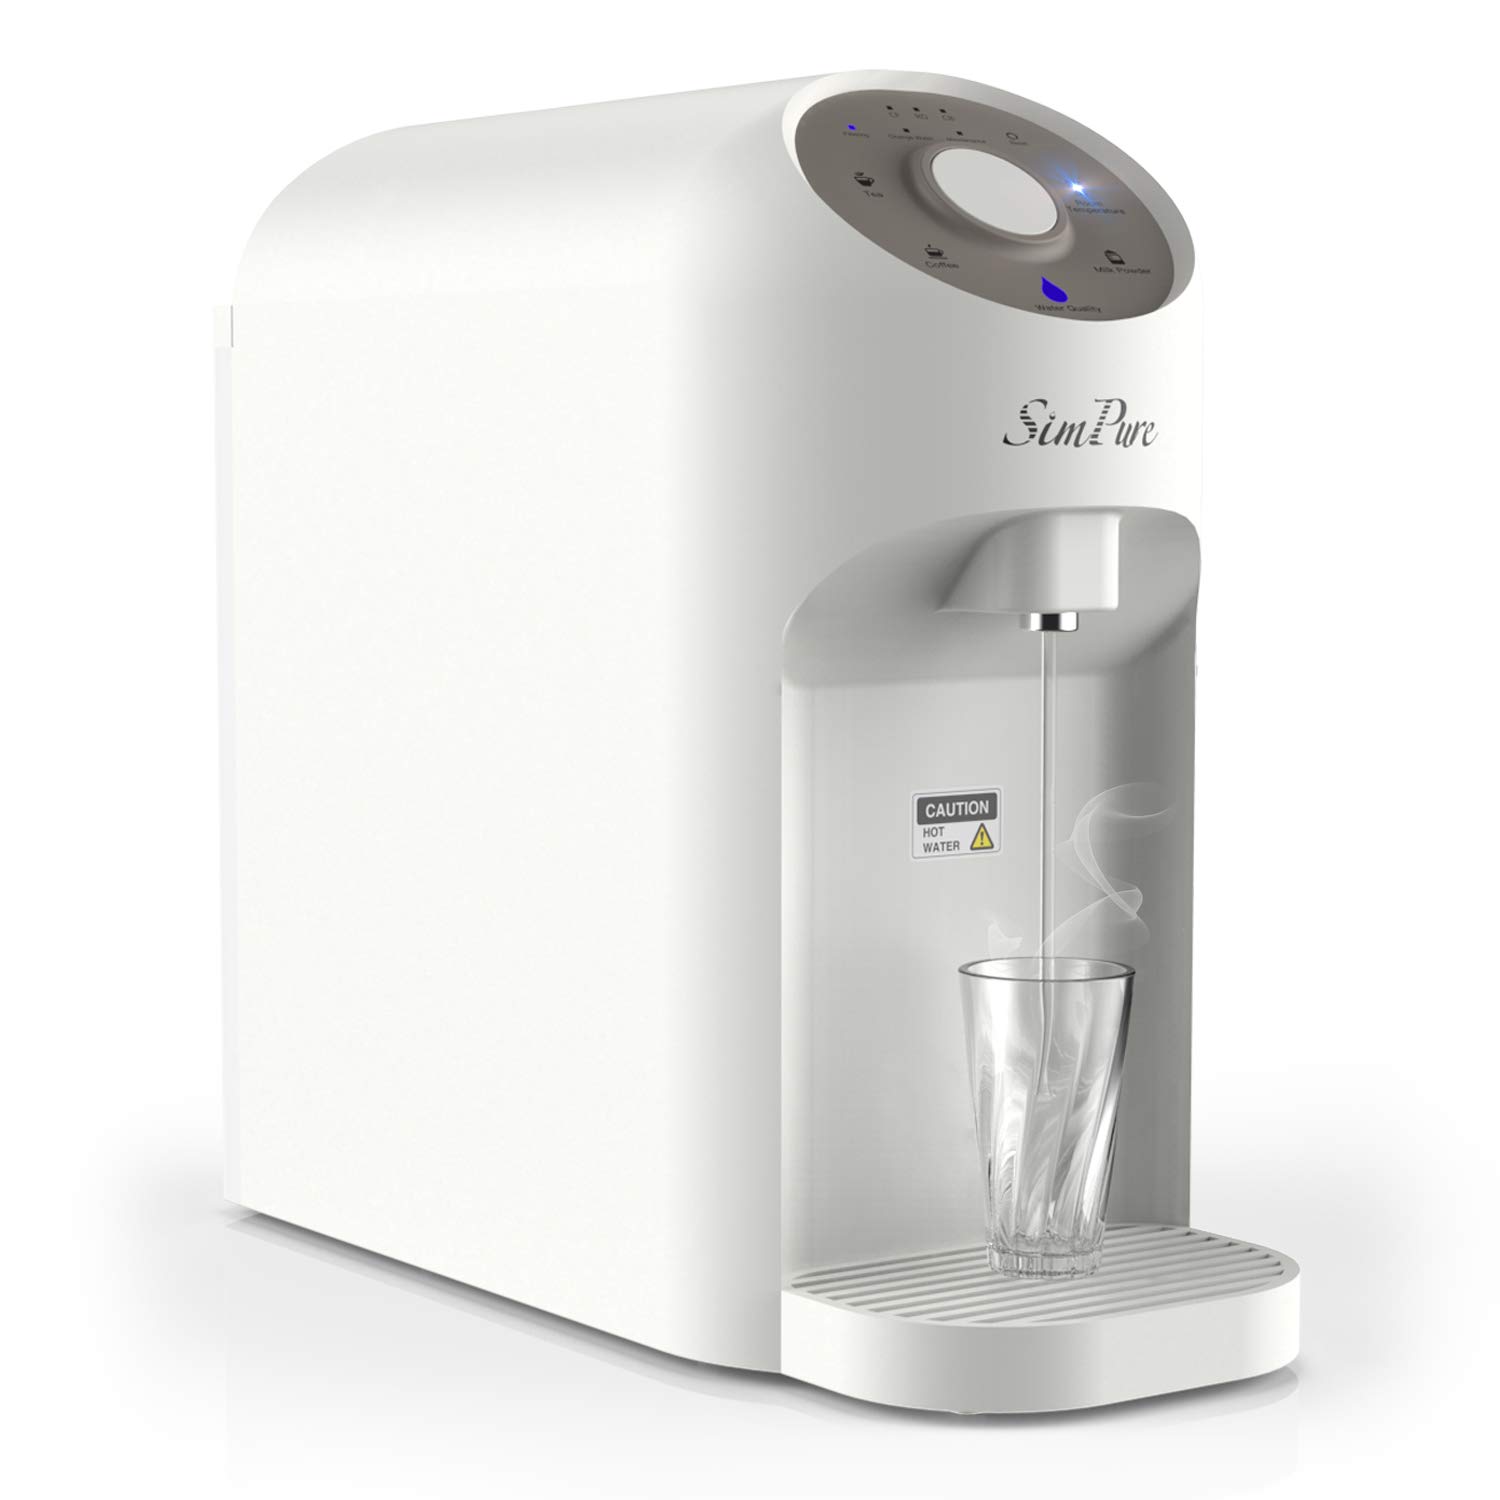 Sistema de filtración de agua por ósmosis inversa en caliente instantáneo SimPure Y5